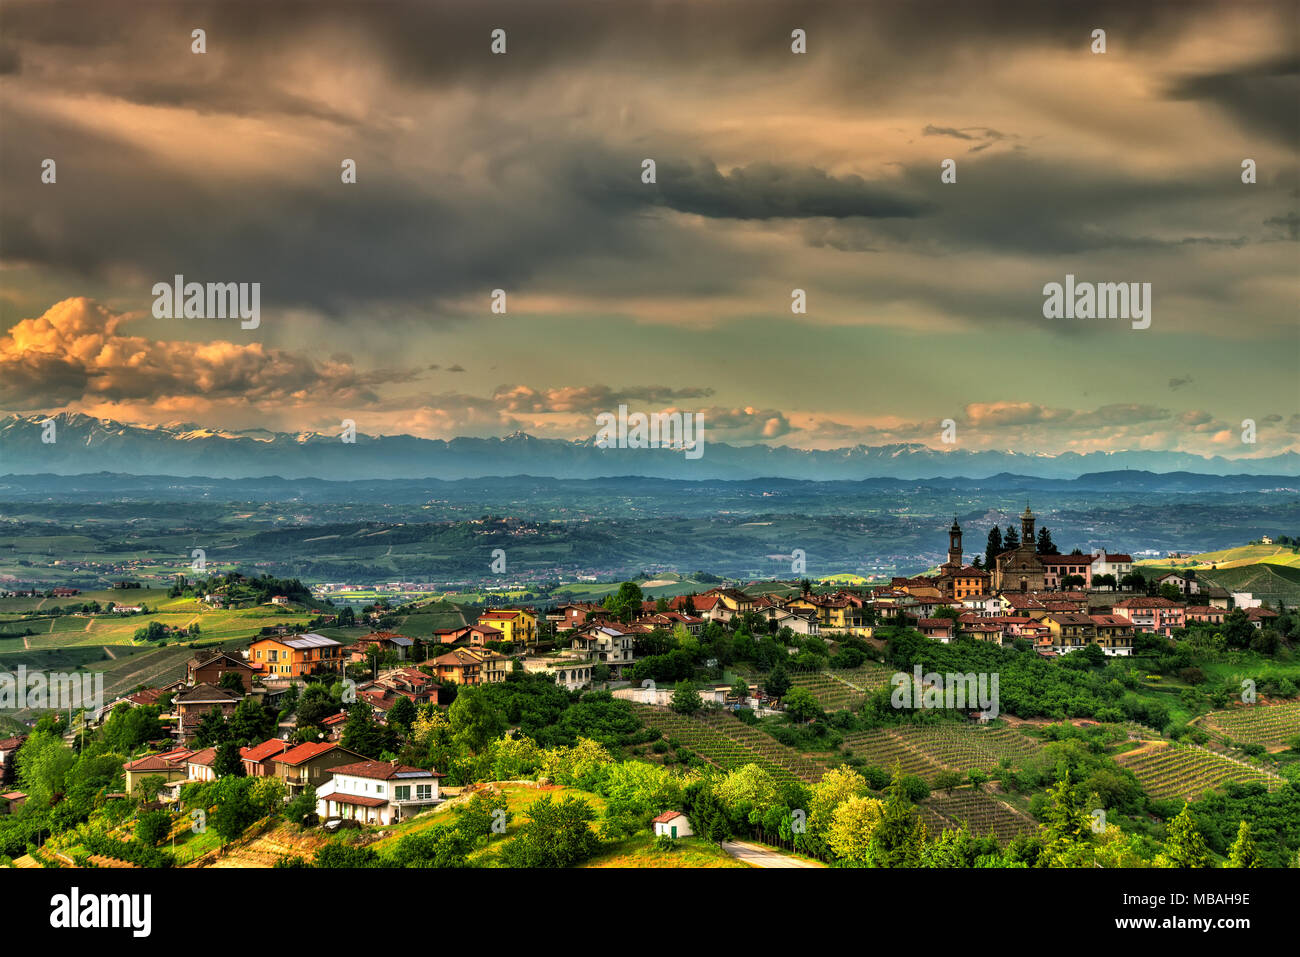 Il villaggio di Rodello, nelle Langhe (Piemonte, Italia), circondata da colline coltivate a vigneti e, in backround, le Alpi. Foto Stock